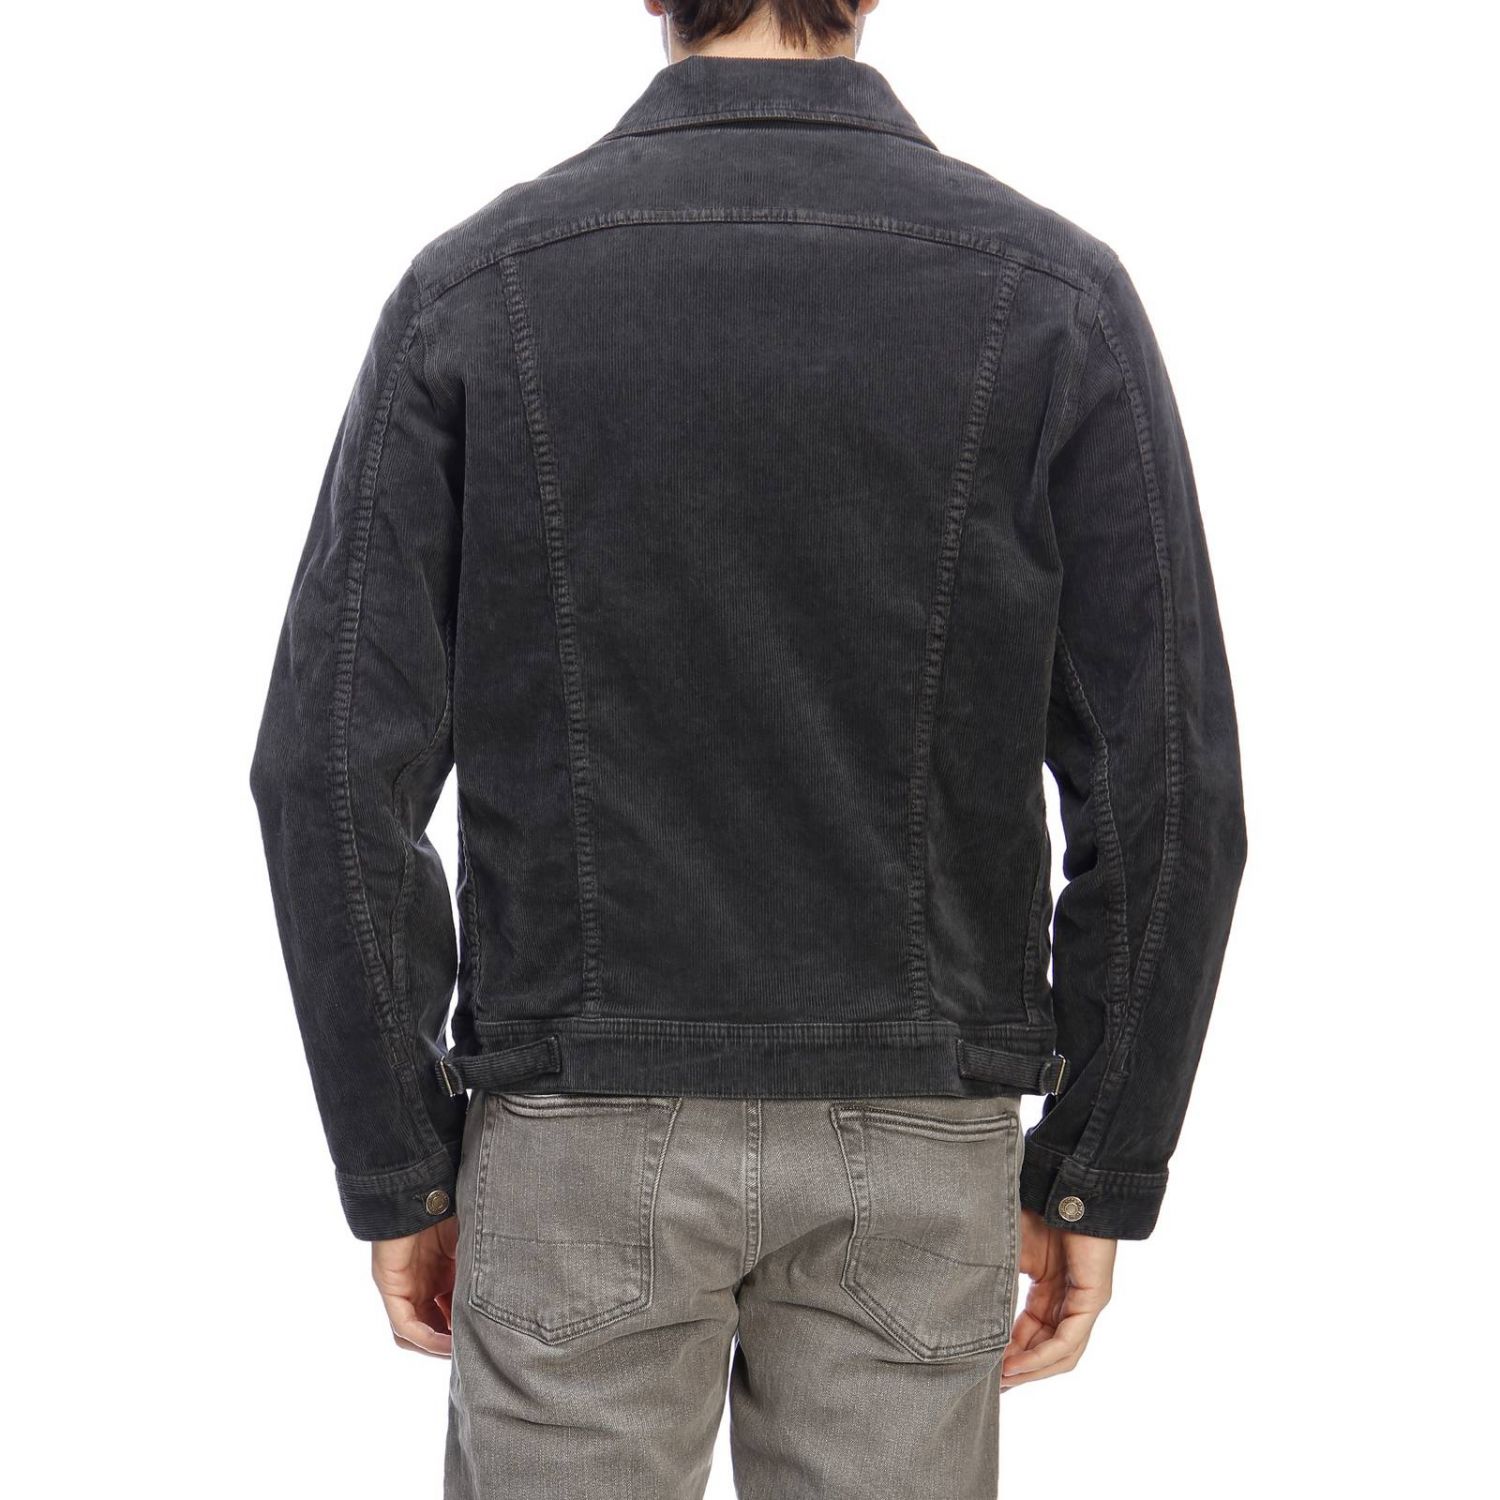 Tom Ford Outlet: jacket for man - Grey | Tom Ford jacket TFD111BSJ19 ...